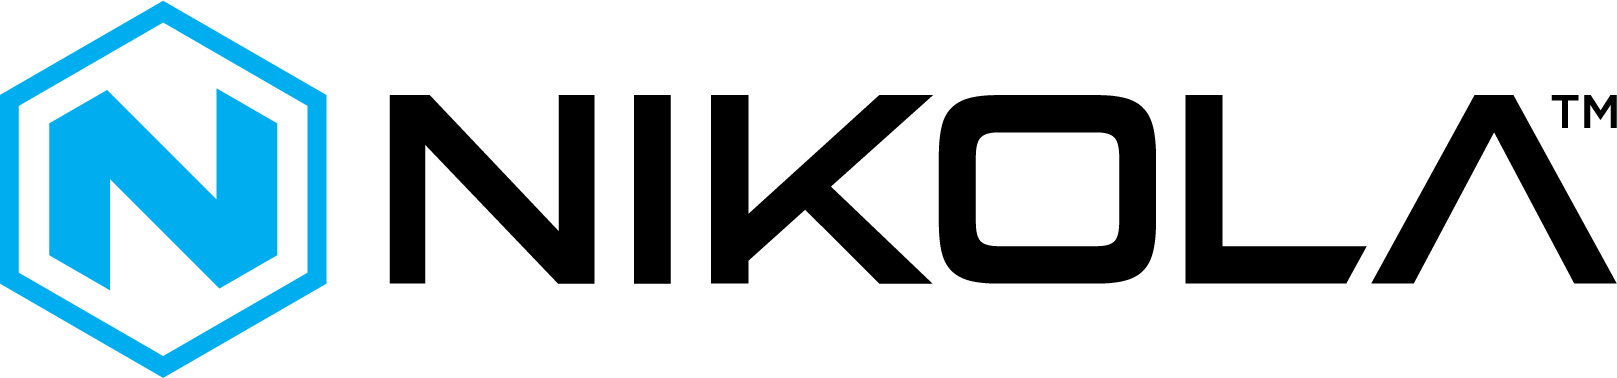 Nikola Logo png